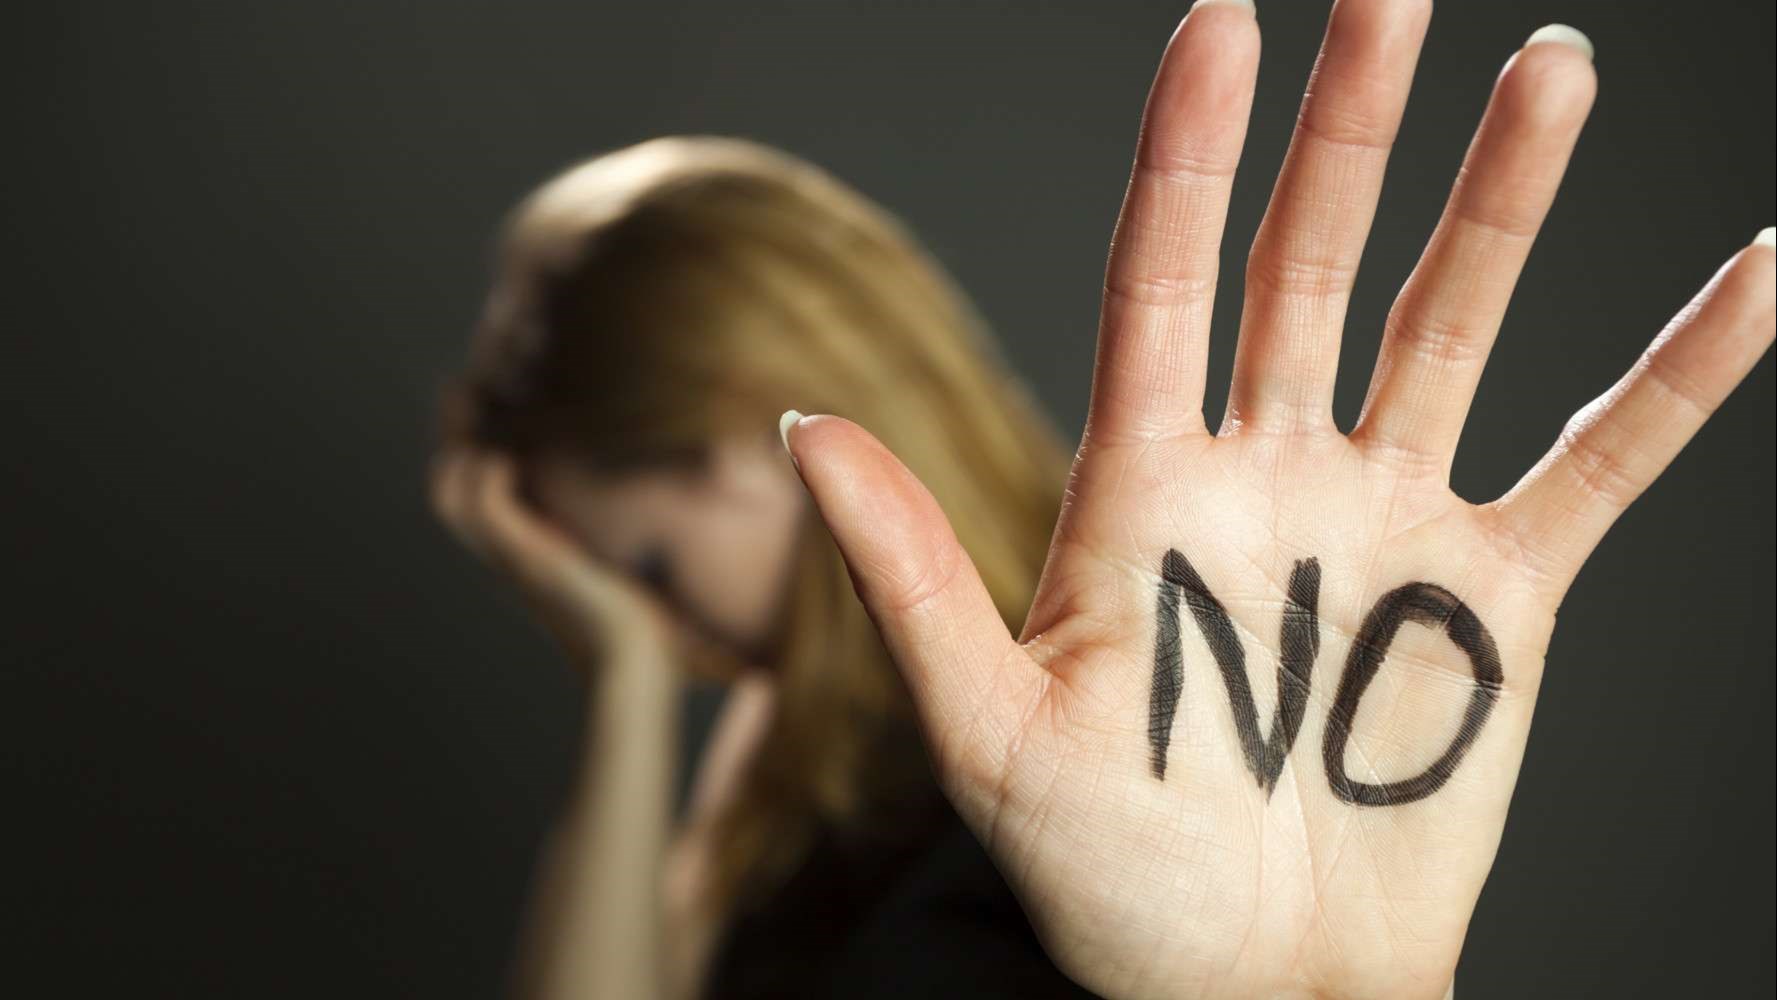 Σάλος στη Βρετανία: Καταγγελίες για σεξουαλική παρενόχληση γυναικών από σεκιούριτι σε ξενοδοχεία καραντίνας